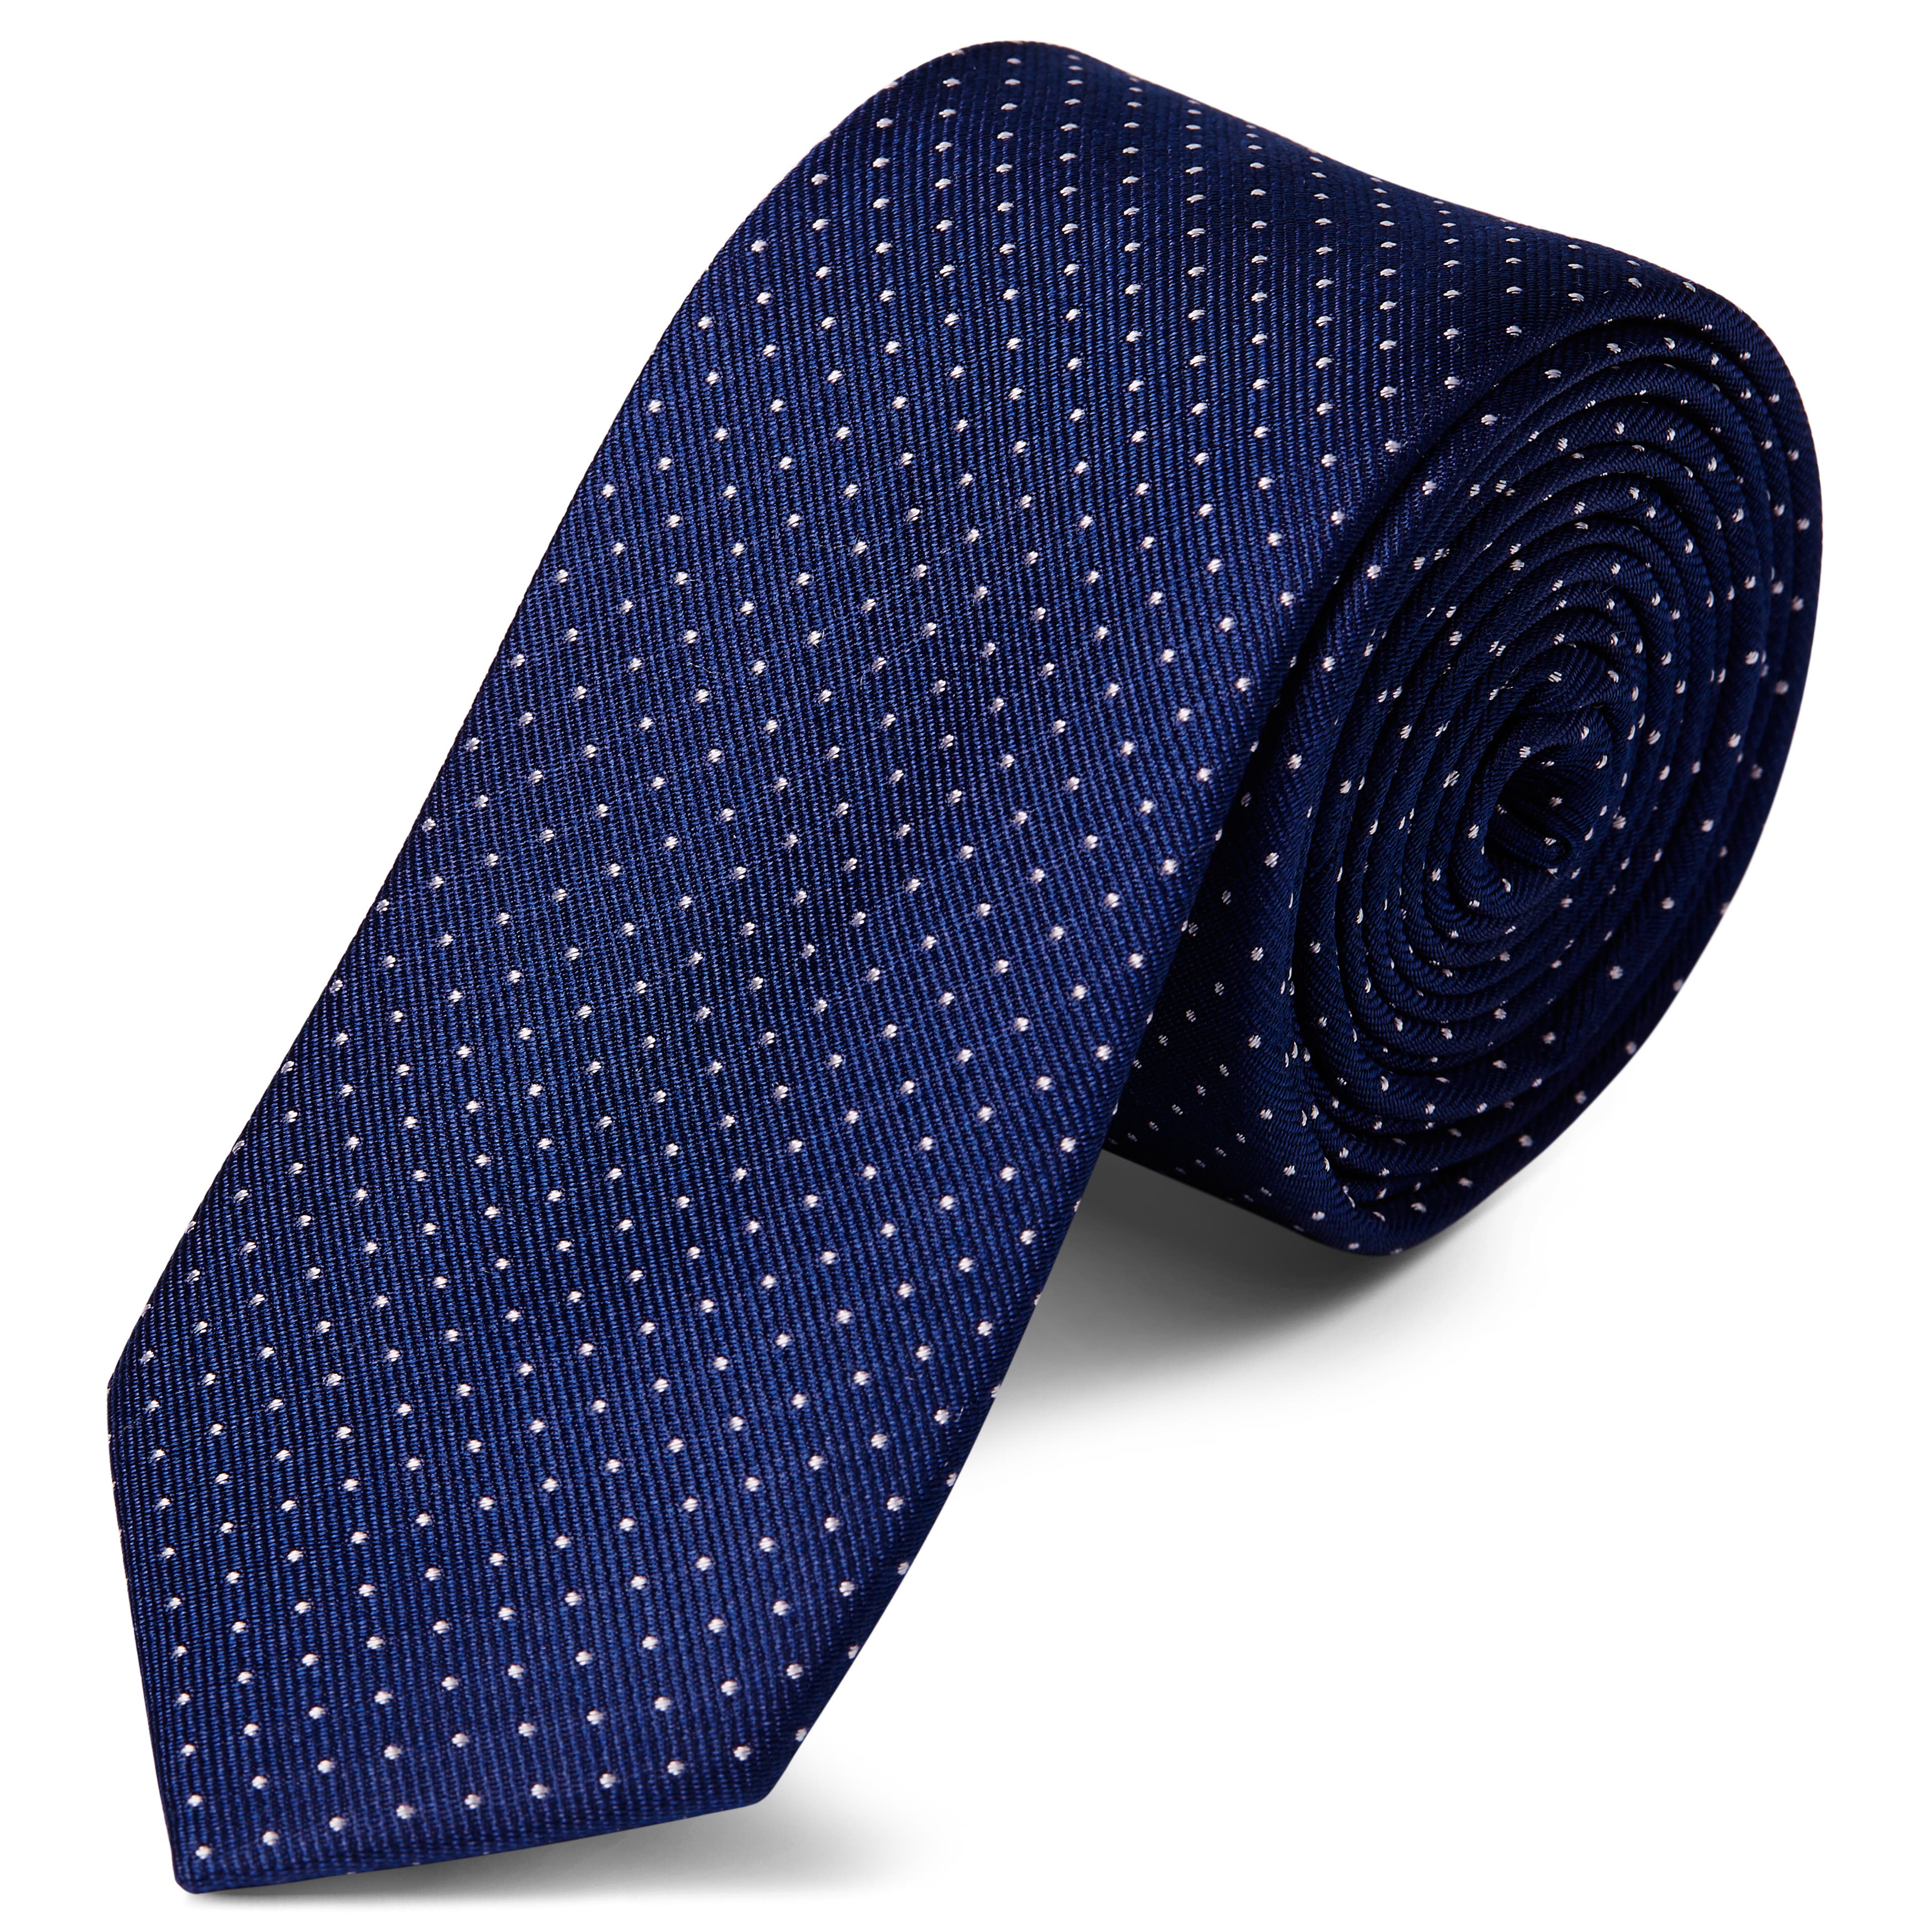 Cravate en soie bleu marine à pois blancs - 6 cm